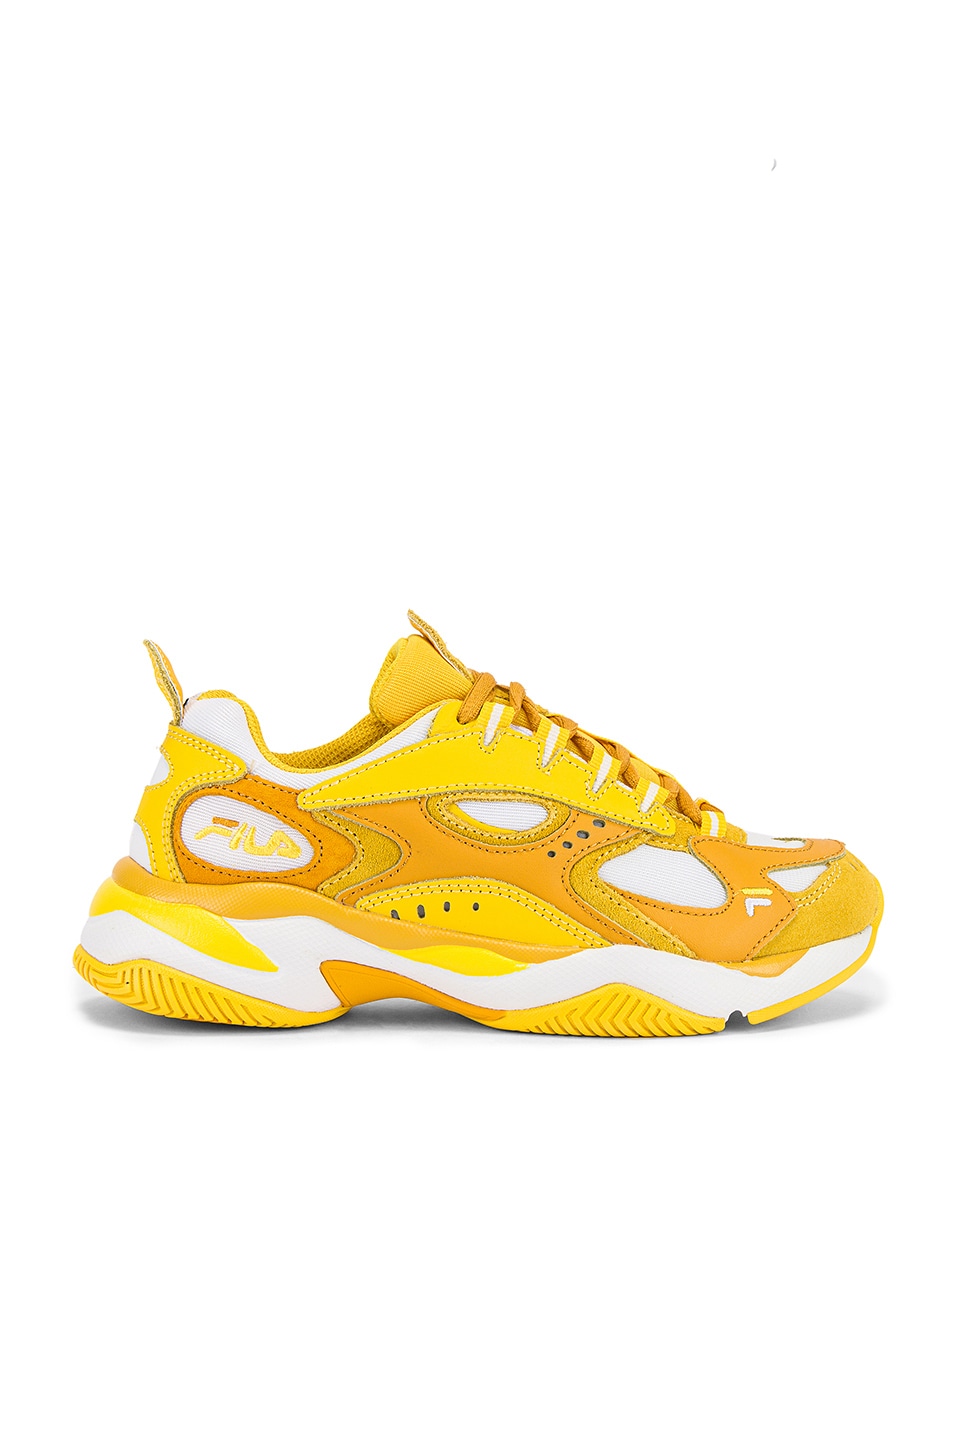 shoes fila yellow